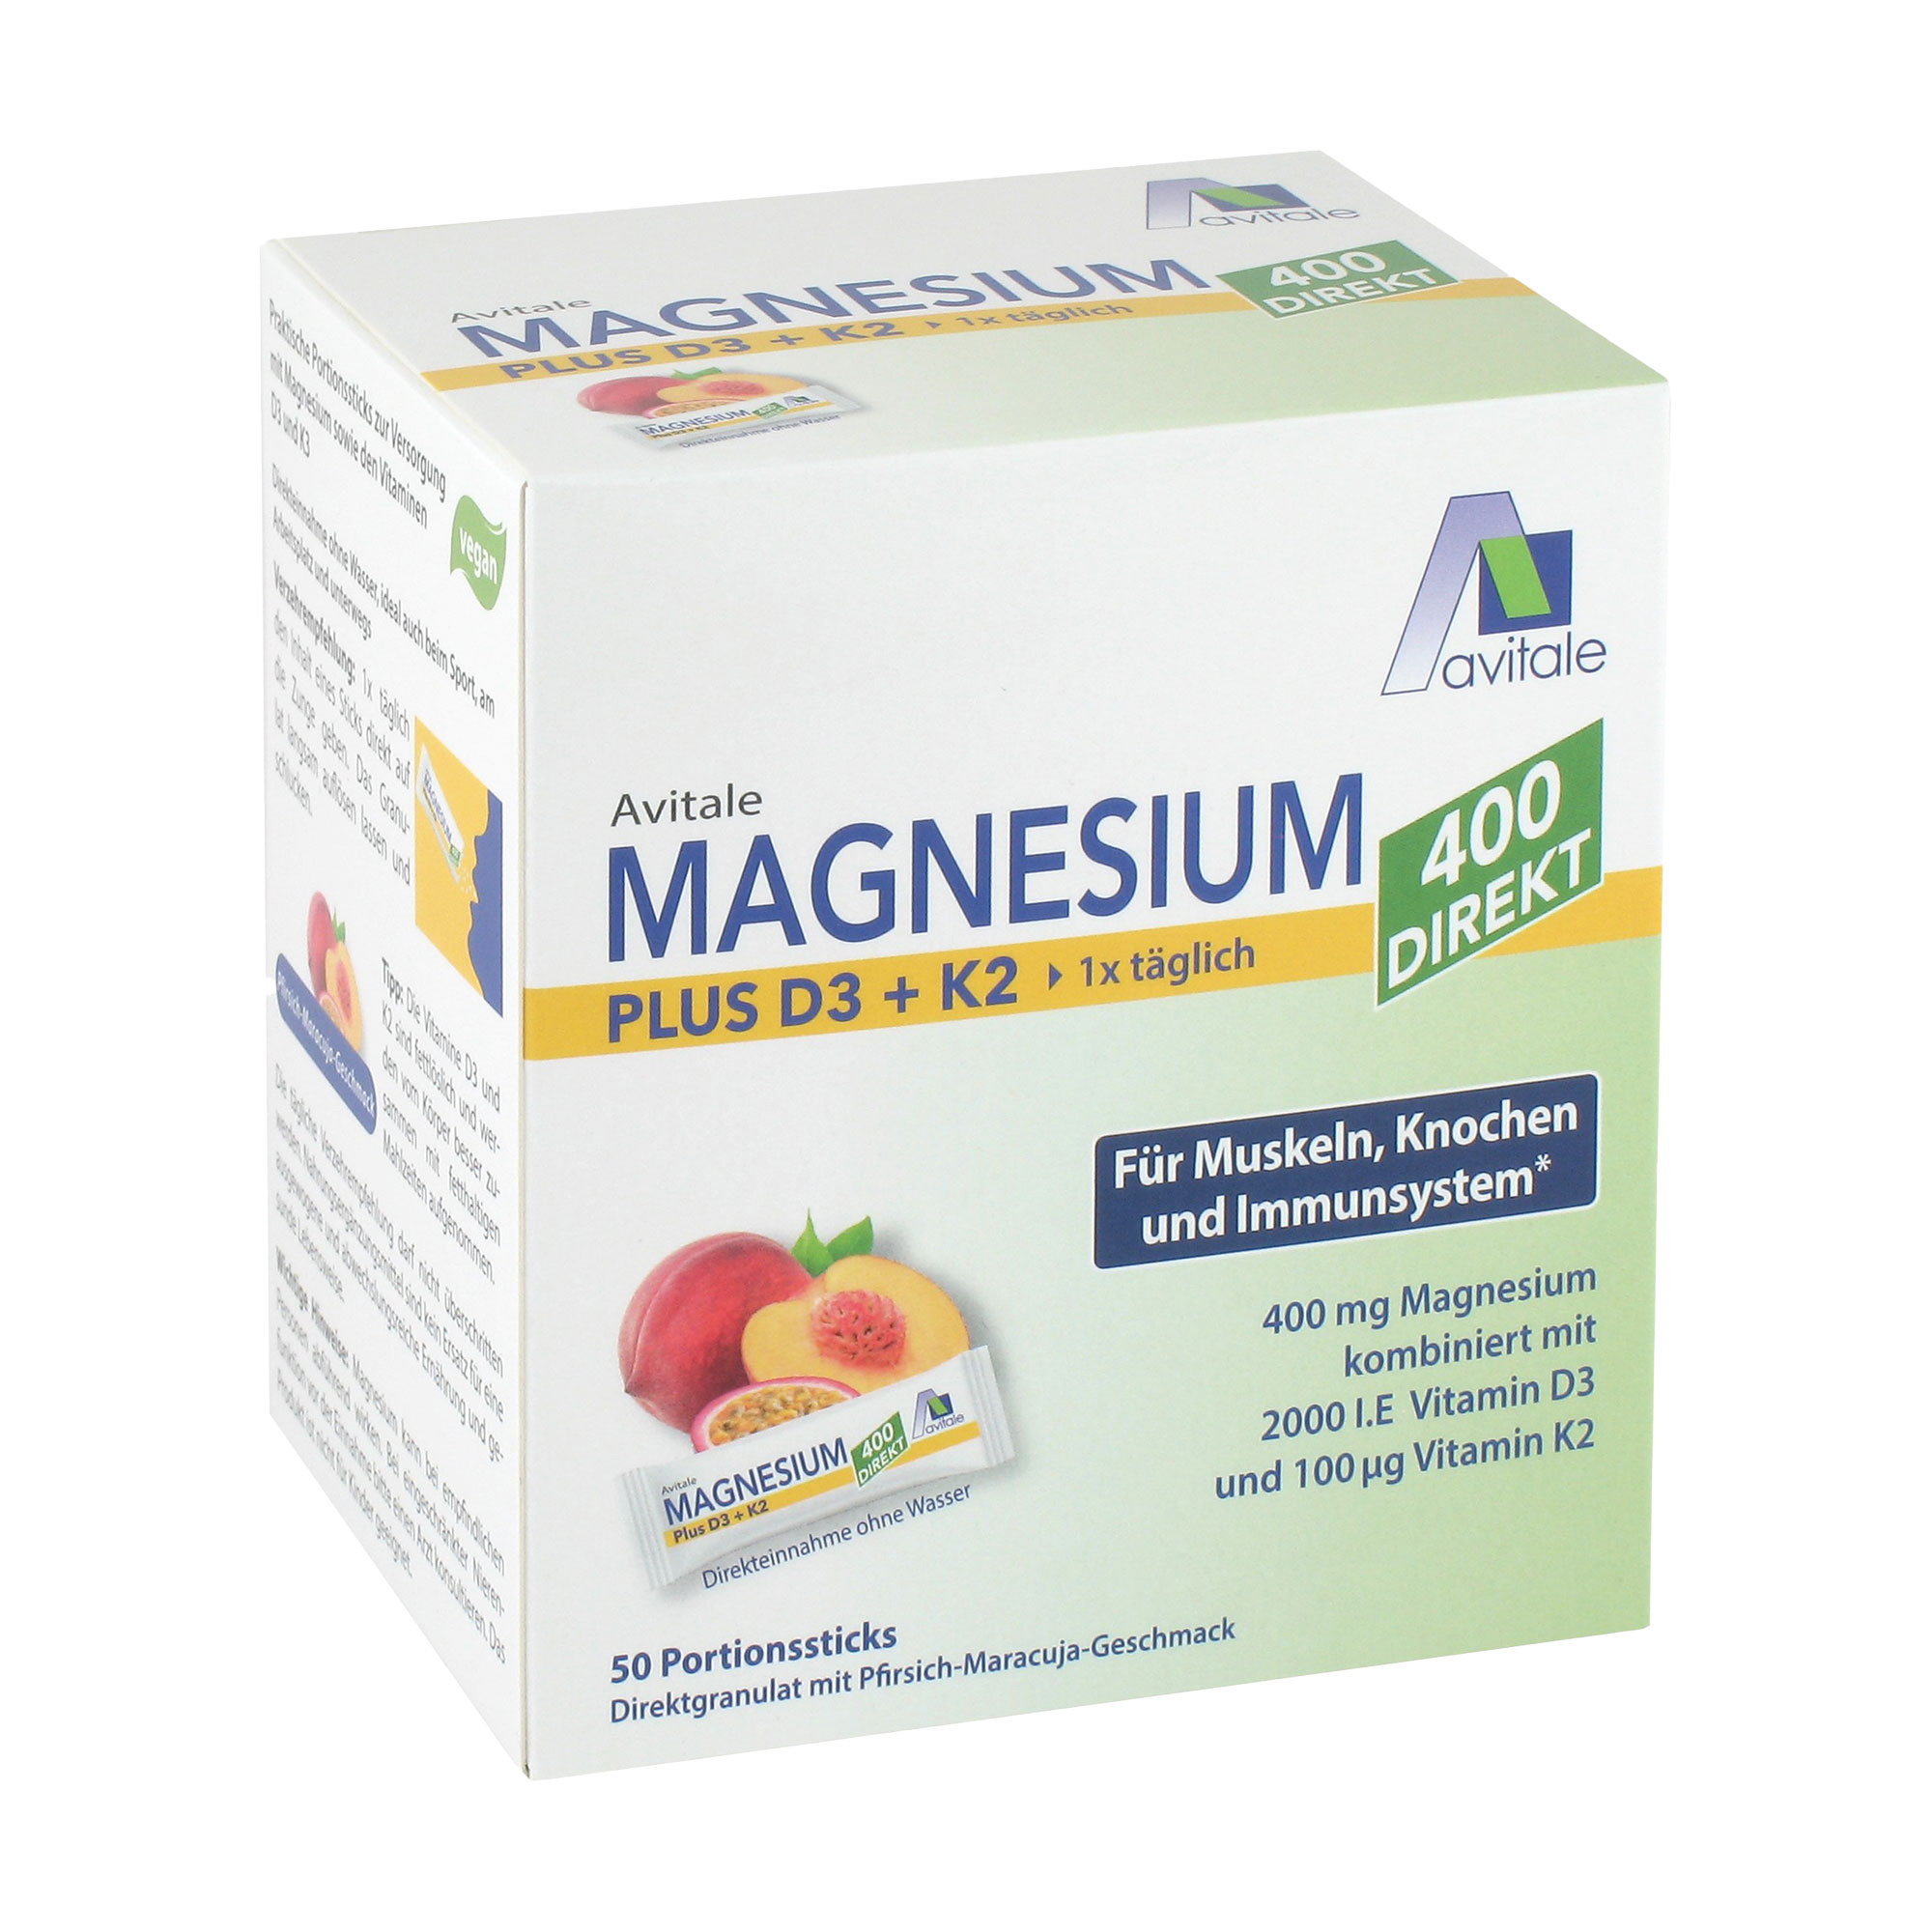 Nahrungsergänzungsmittel mit 400 mg Magnesium plus Vitamin D3 und Vitamin K2. Praktische Portionssticks mit angenehmem Pfirsich-Maracuja-Geschmack zur Direkteinnahme ohne Wasser.